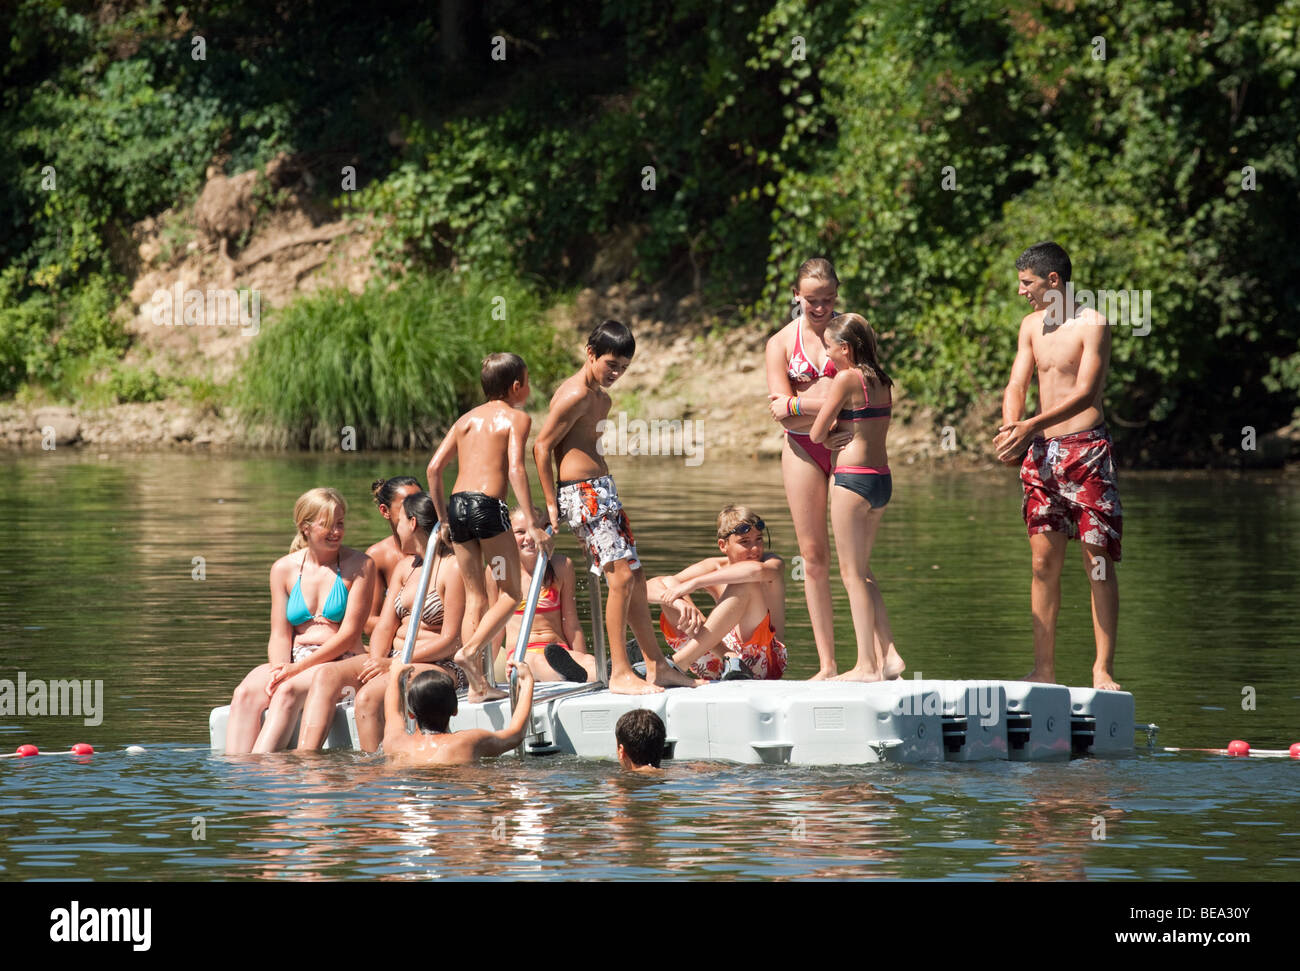 Adolescents jouant sur un ponton dans la rivière Lot, Castelmoron, Aquitaine, France Banque D'Images